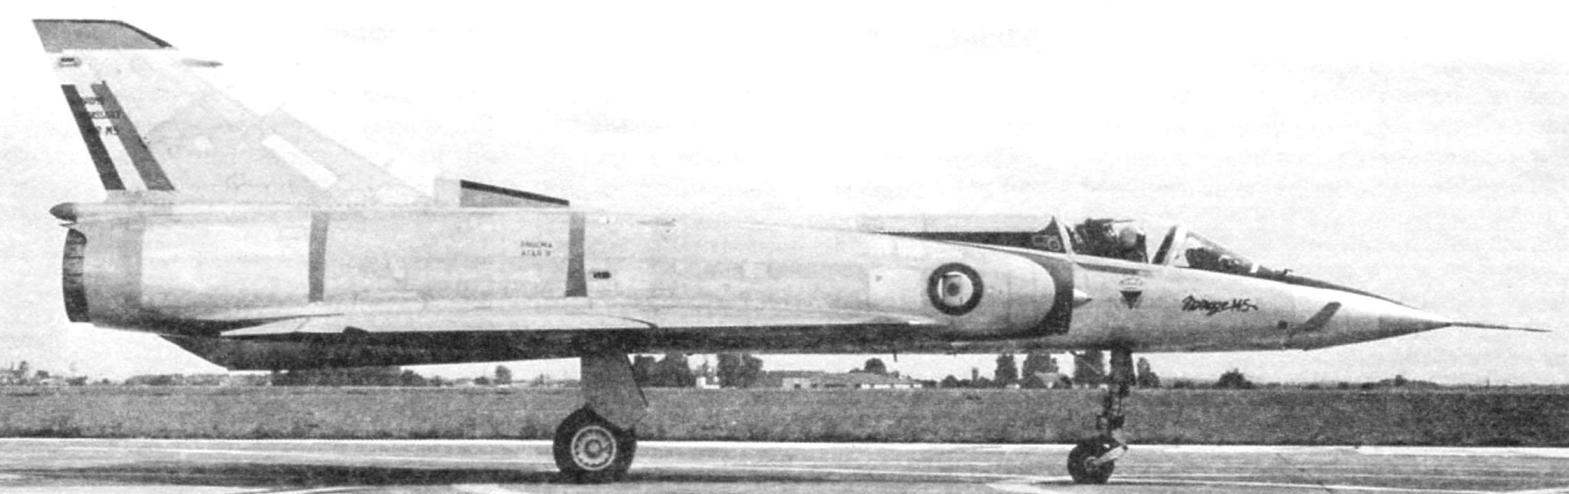 «Мираж» 5J, оборудованный передними горизонтальными поверхностями. 1972 год